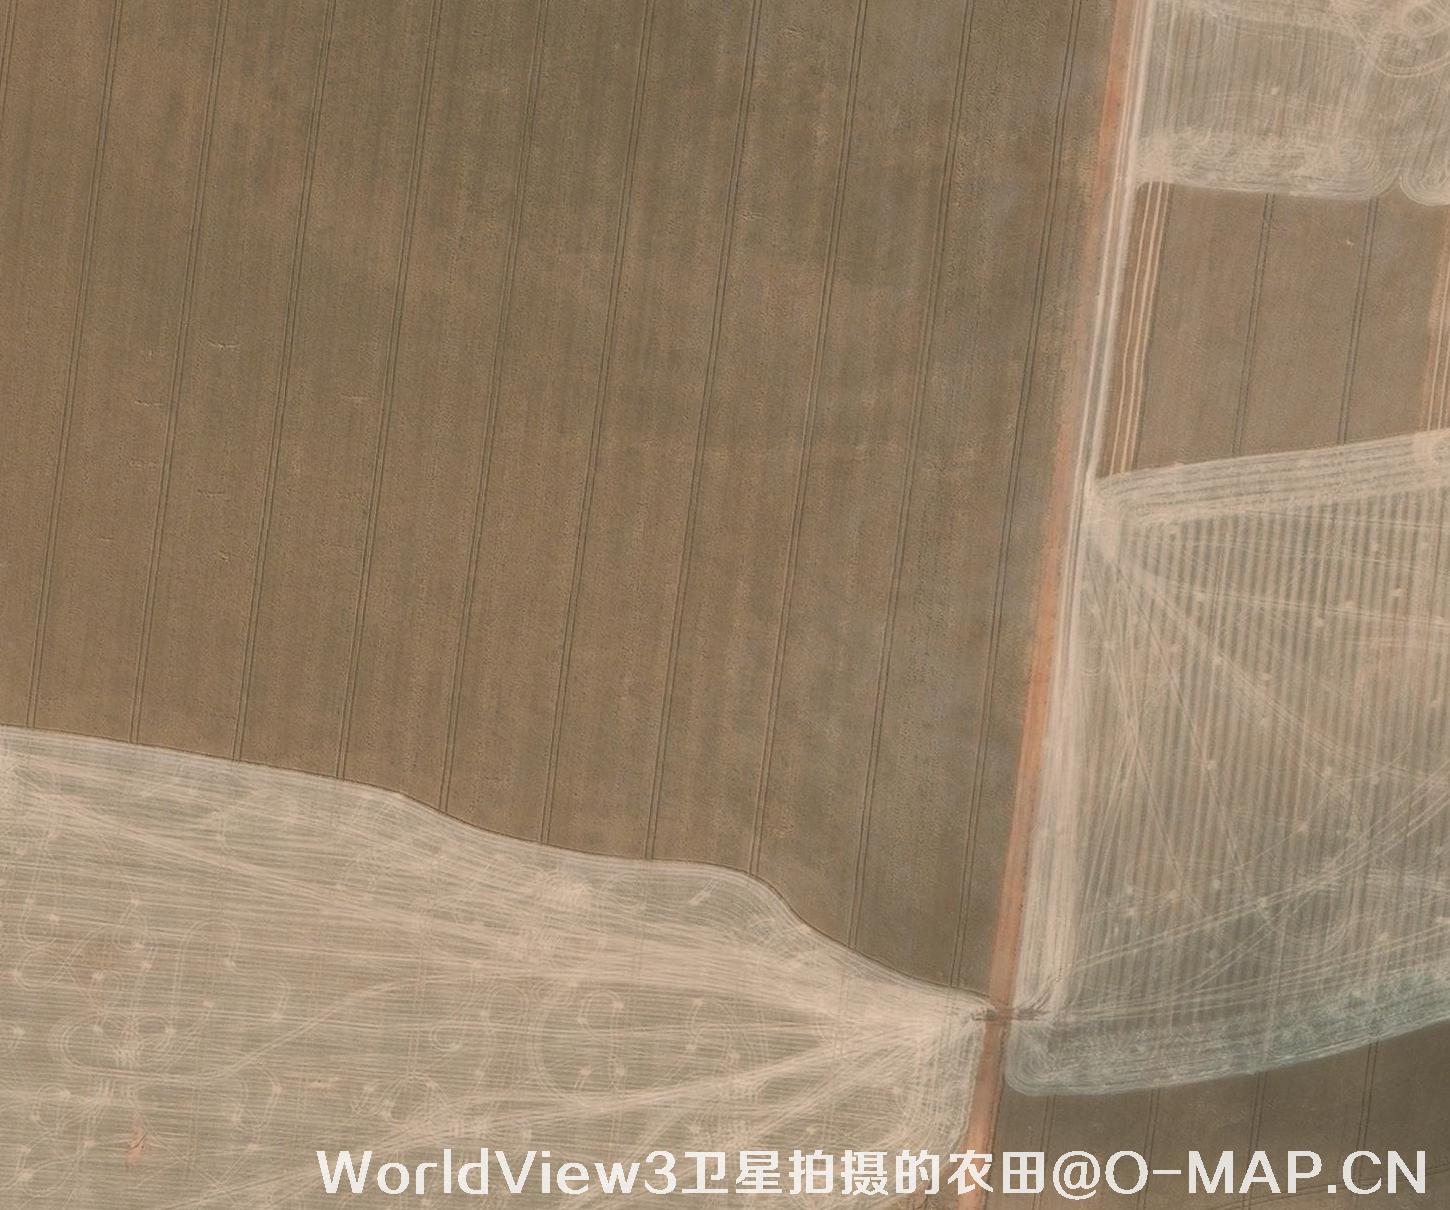 0.3米分辨率的农田WorldView3卫星图